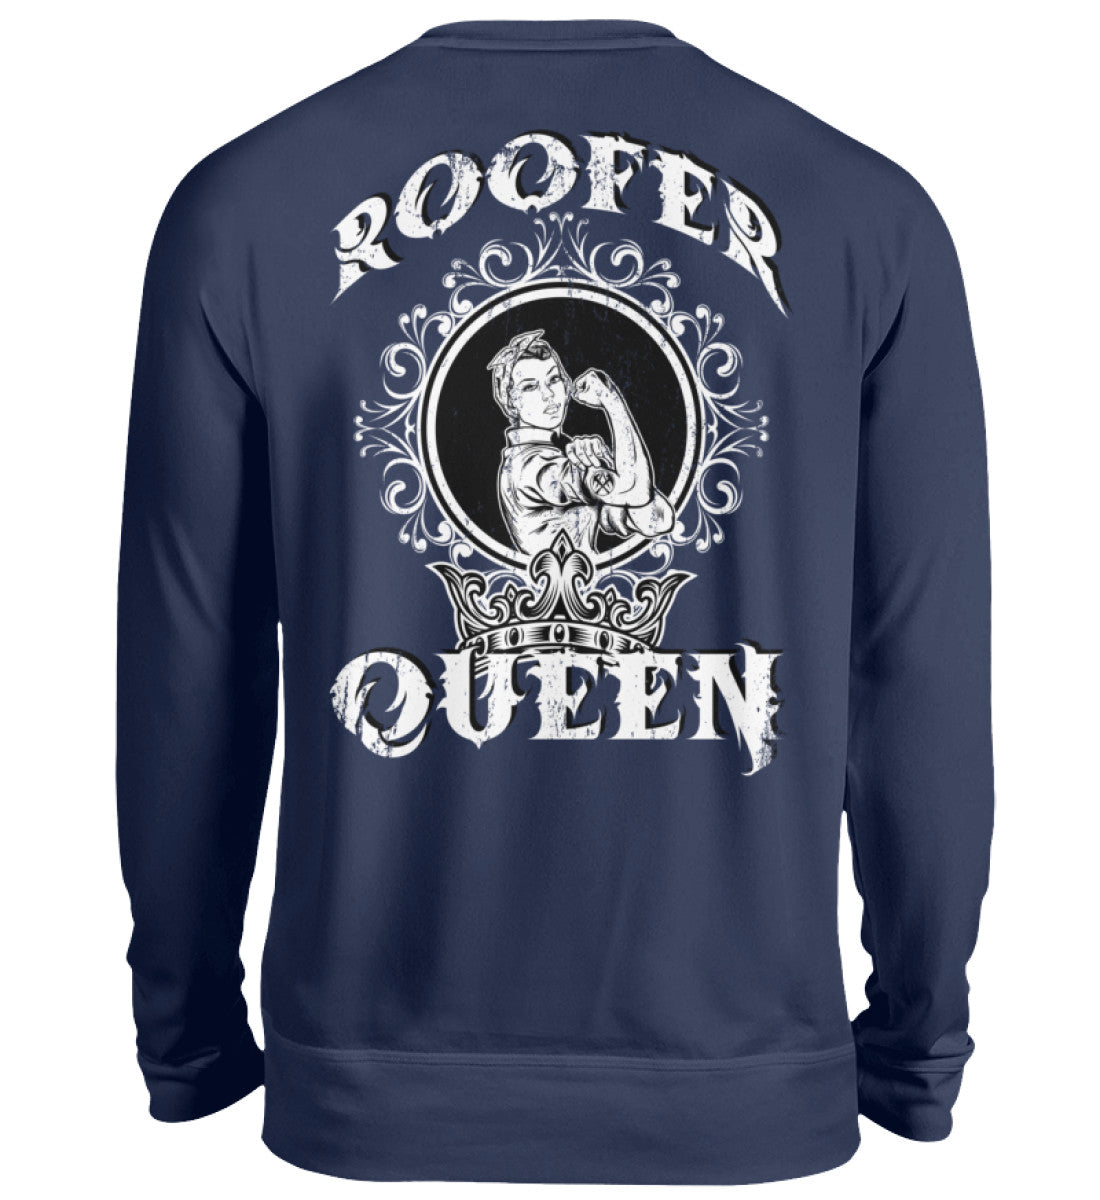 Roofer Queen Version 1.0  - Unisex Pullover €39.95 Rooferking